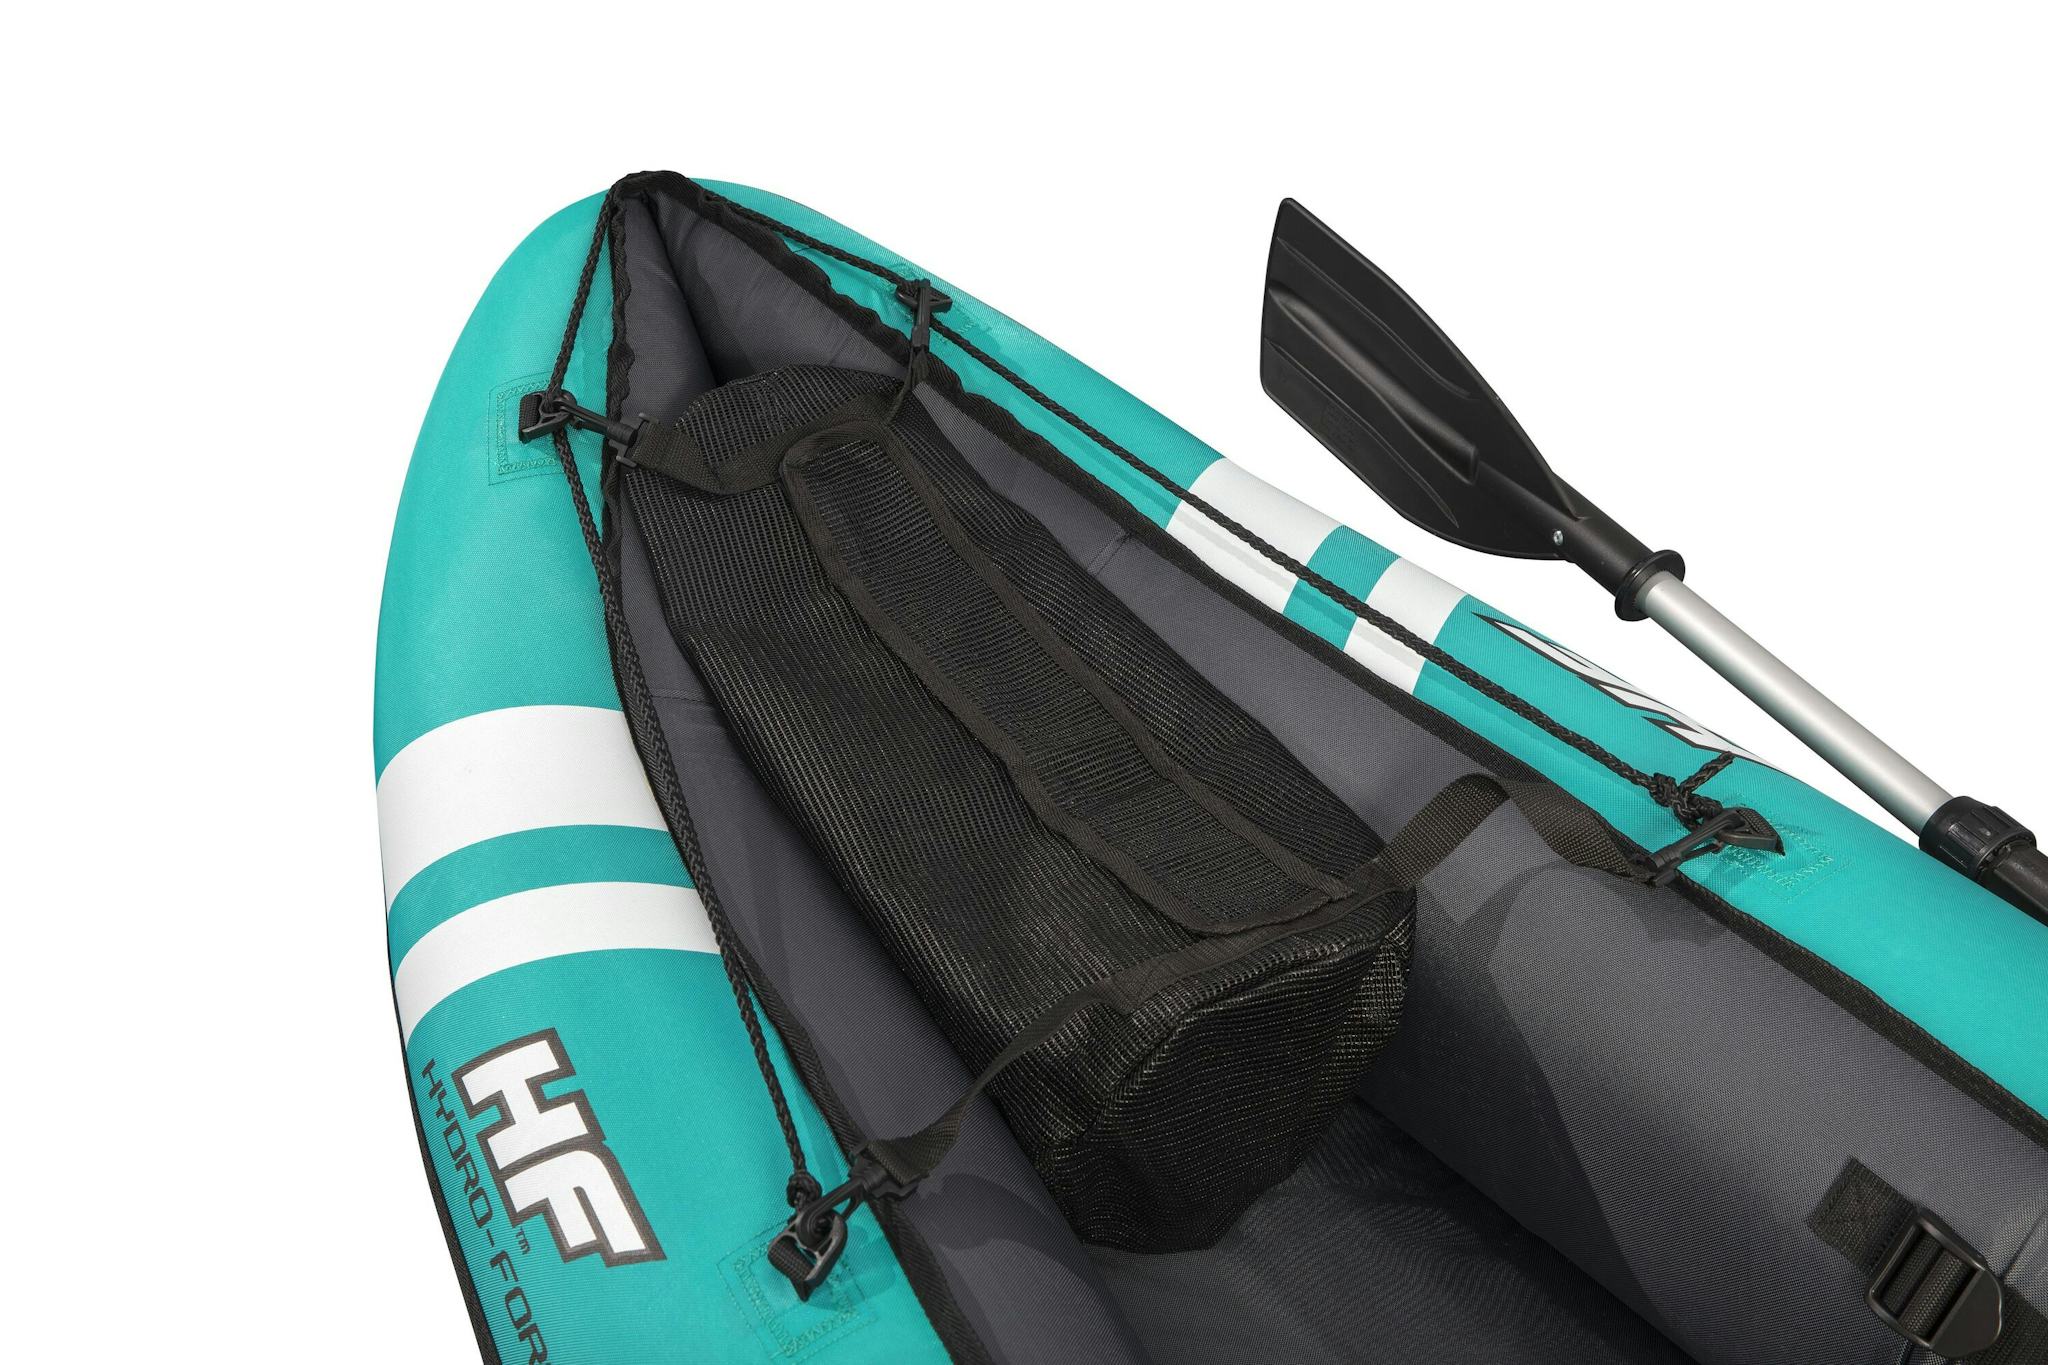 Sports d'eau Kayak gonflable Hydro-Force™ Ventura Elite X1 280 x 86 cm 1 personne, pagaie, pompe Bestway 7